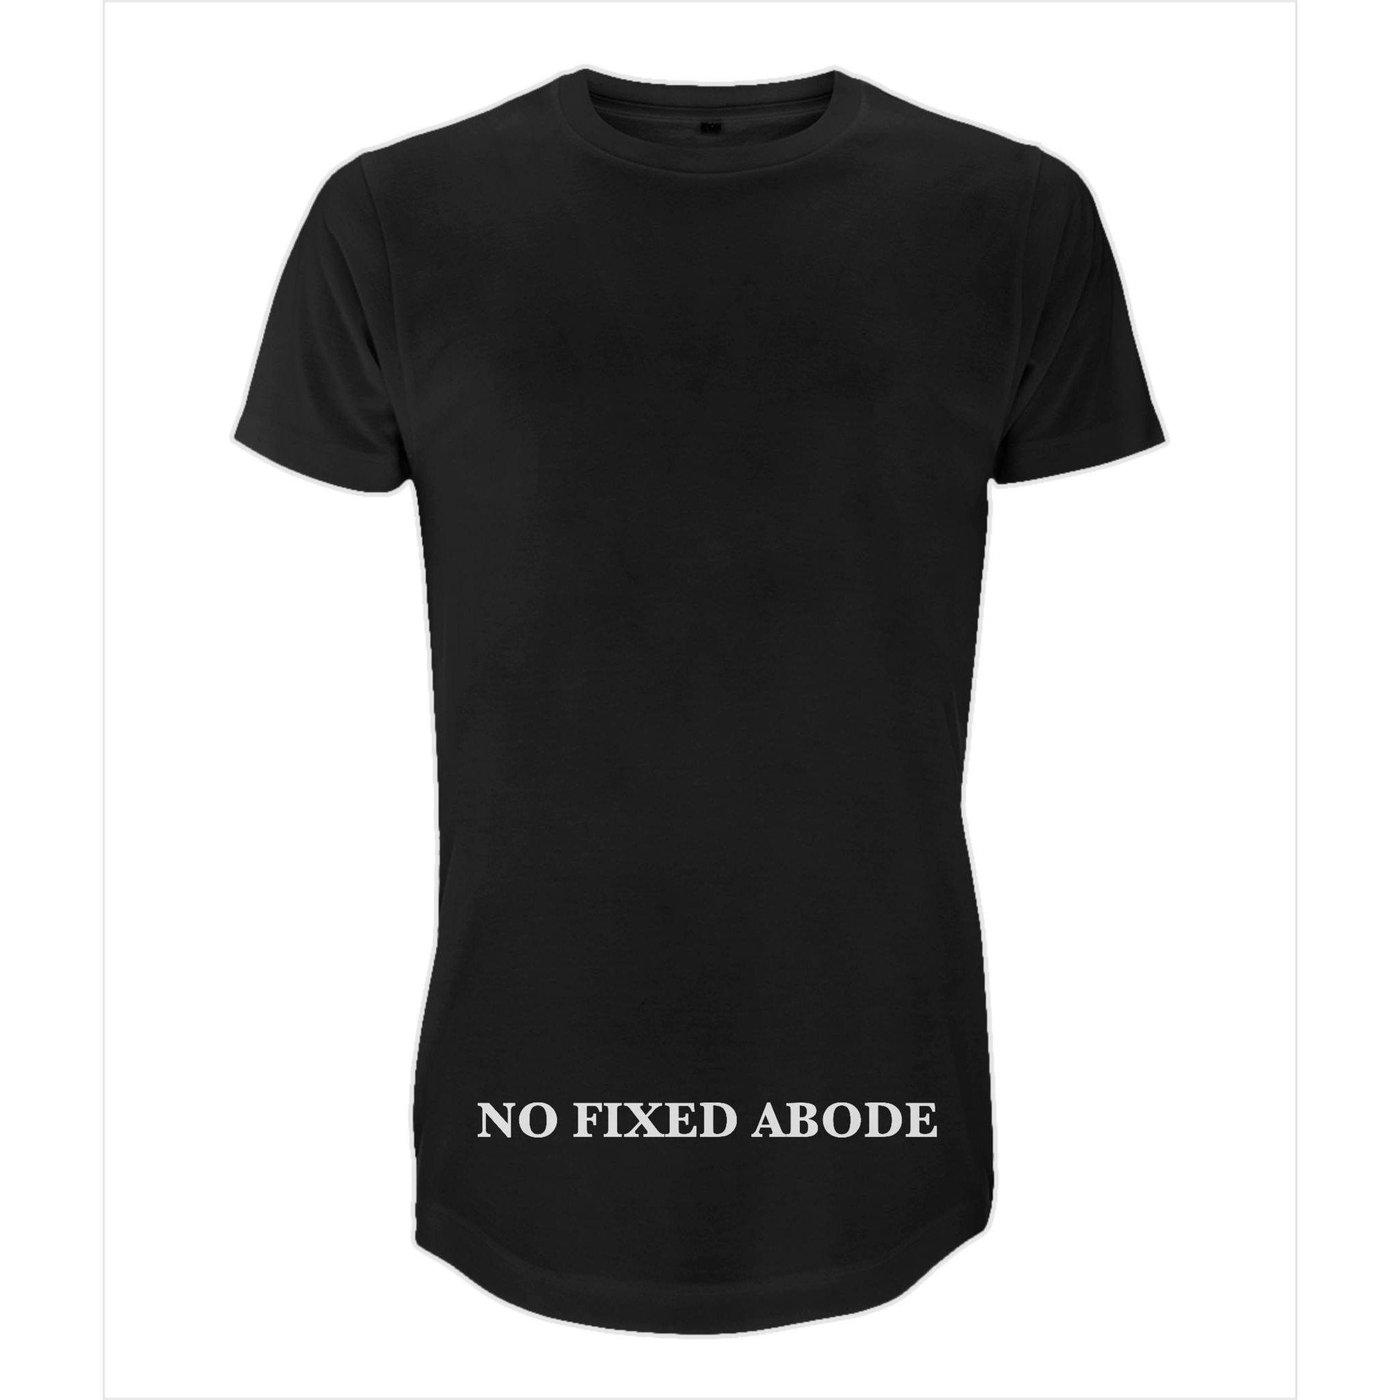 NO FIXED ABODE,Long Men's T-Shirt No Fixed Abode,T-Shirt,S / Black / 100% Cotton